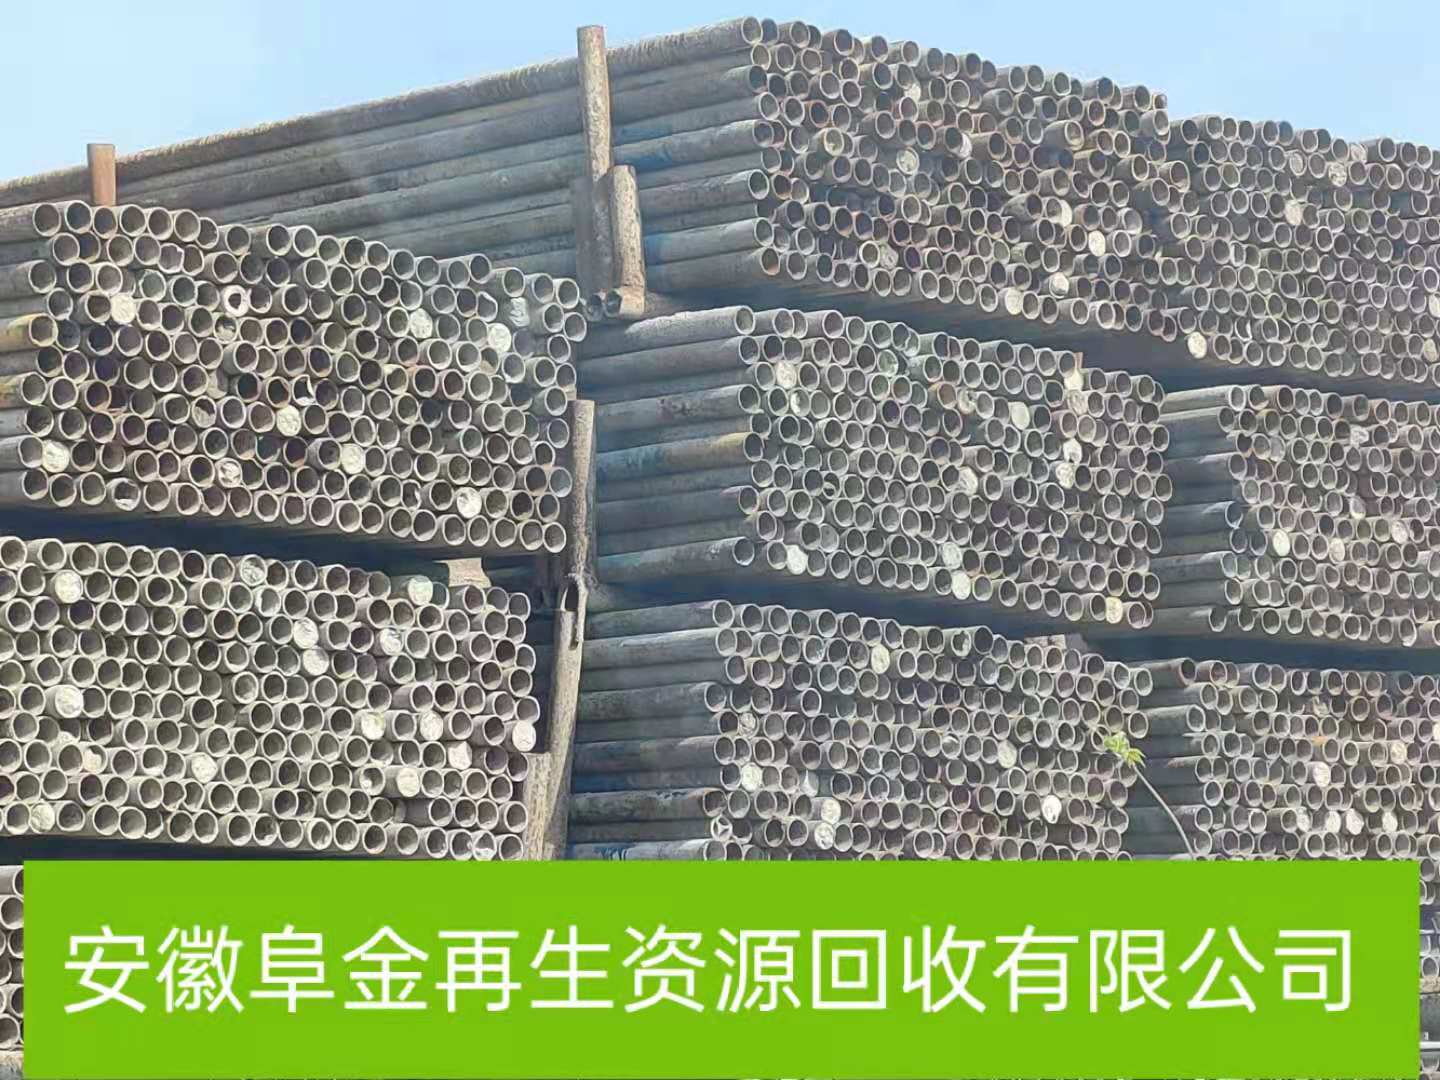 阜阳废铁回收点 工厂废品回收公司